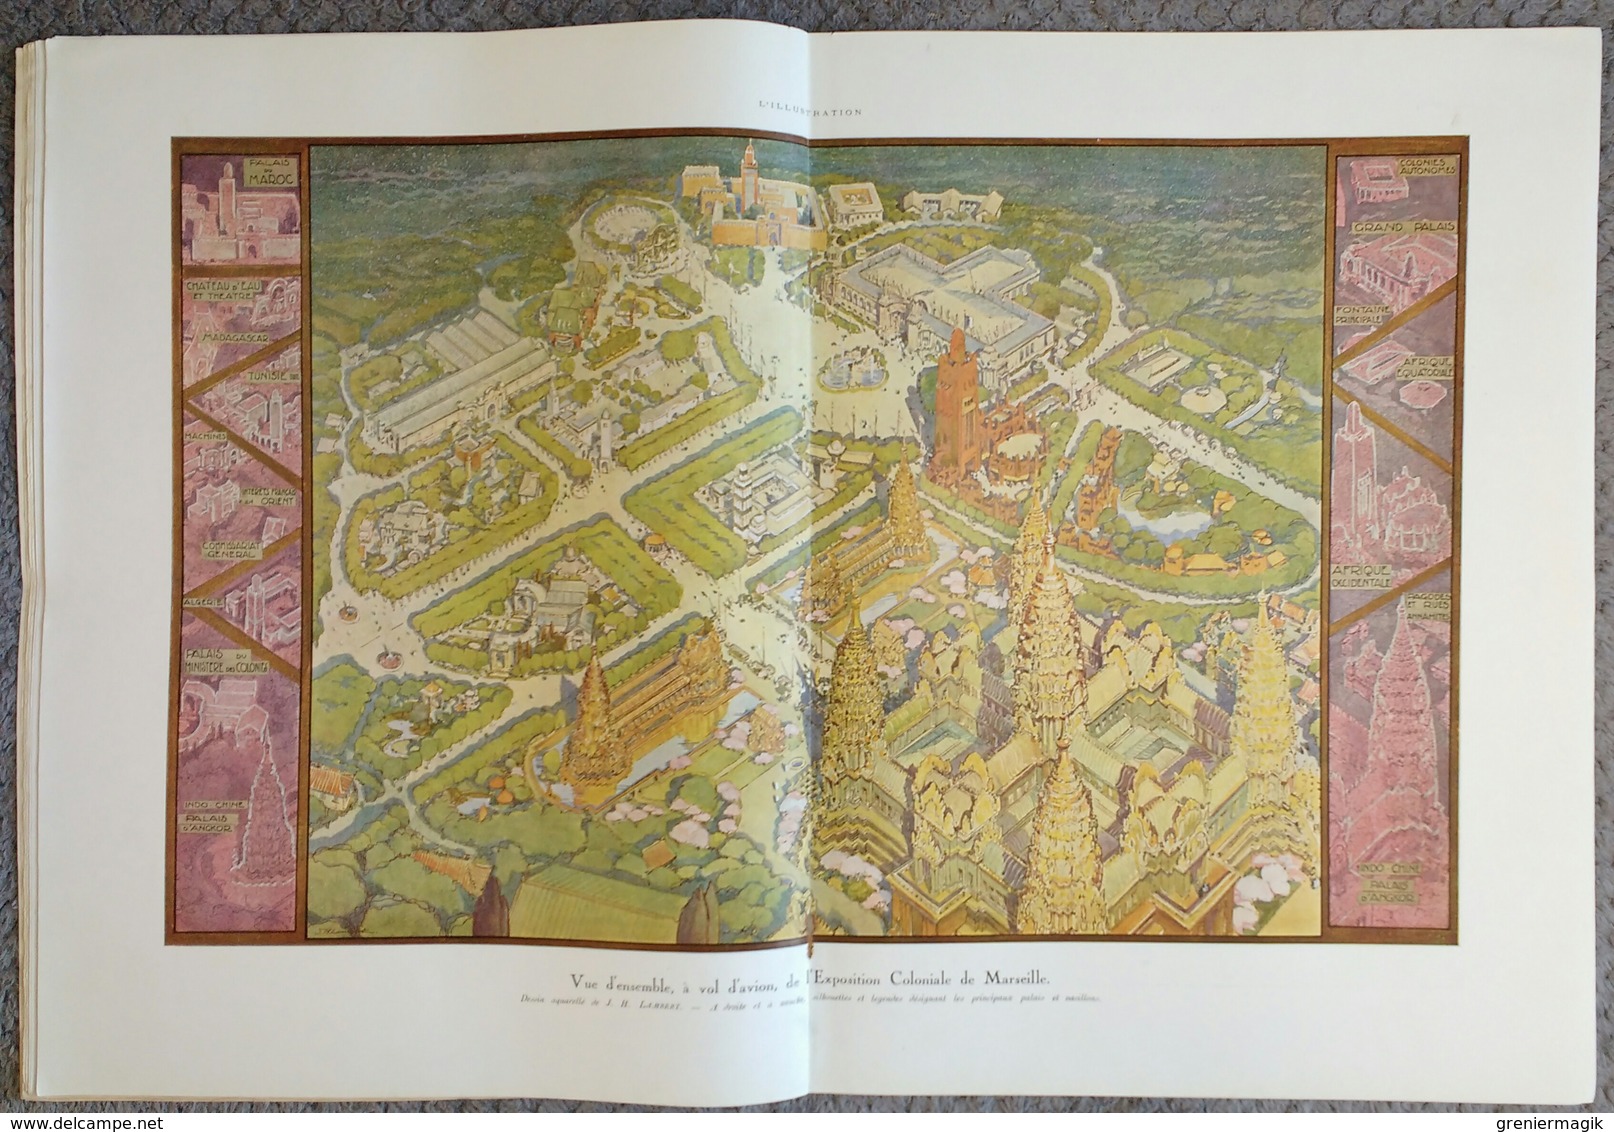 L'Illustration 4131 6 mai 1922 Exposition coloniale de Marseille/La Corse pittoresque/Deschanel/Guynemer/Joffre en Chine